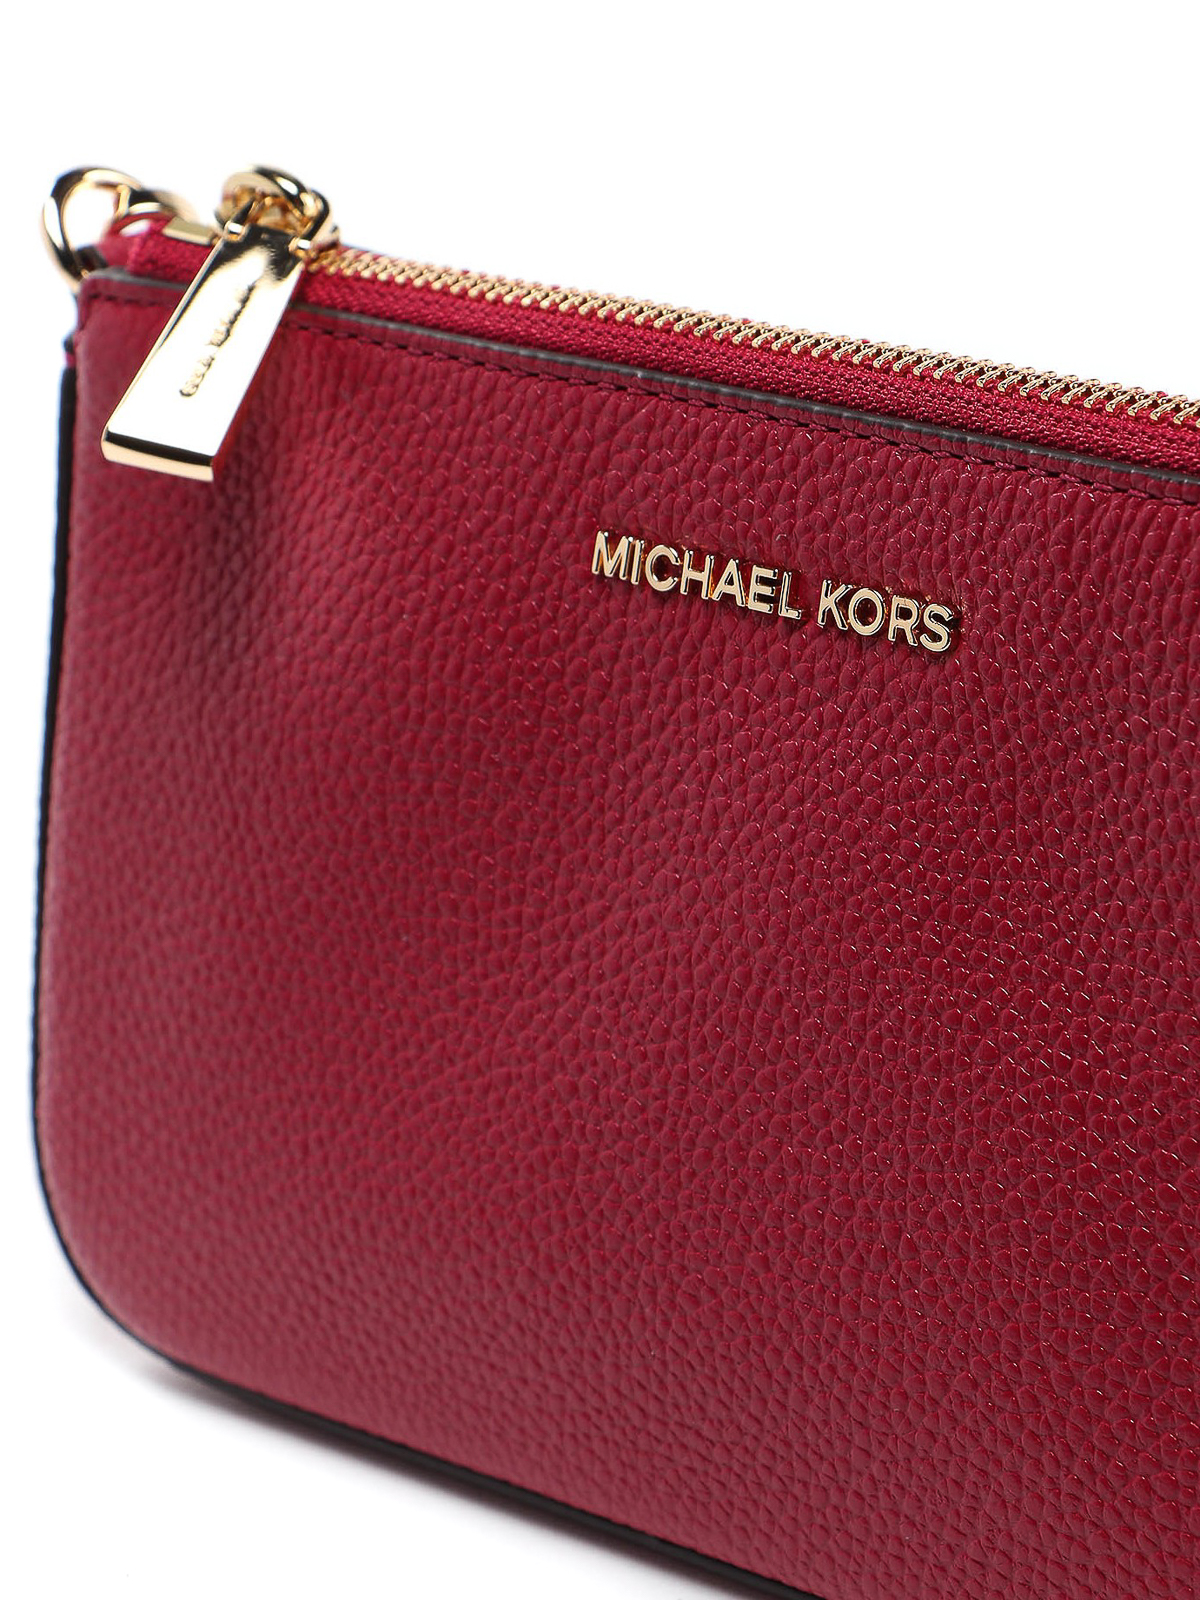 MICHAEL Michael Kors JET SET MEDIUM CHAIN POUCHETTE Handbag Soft